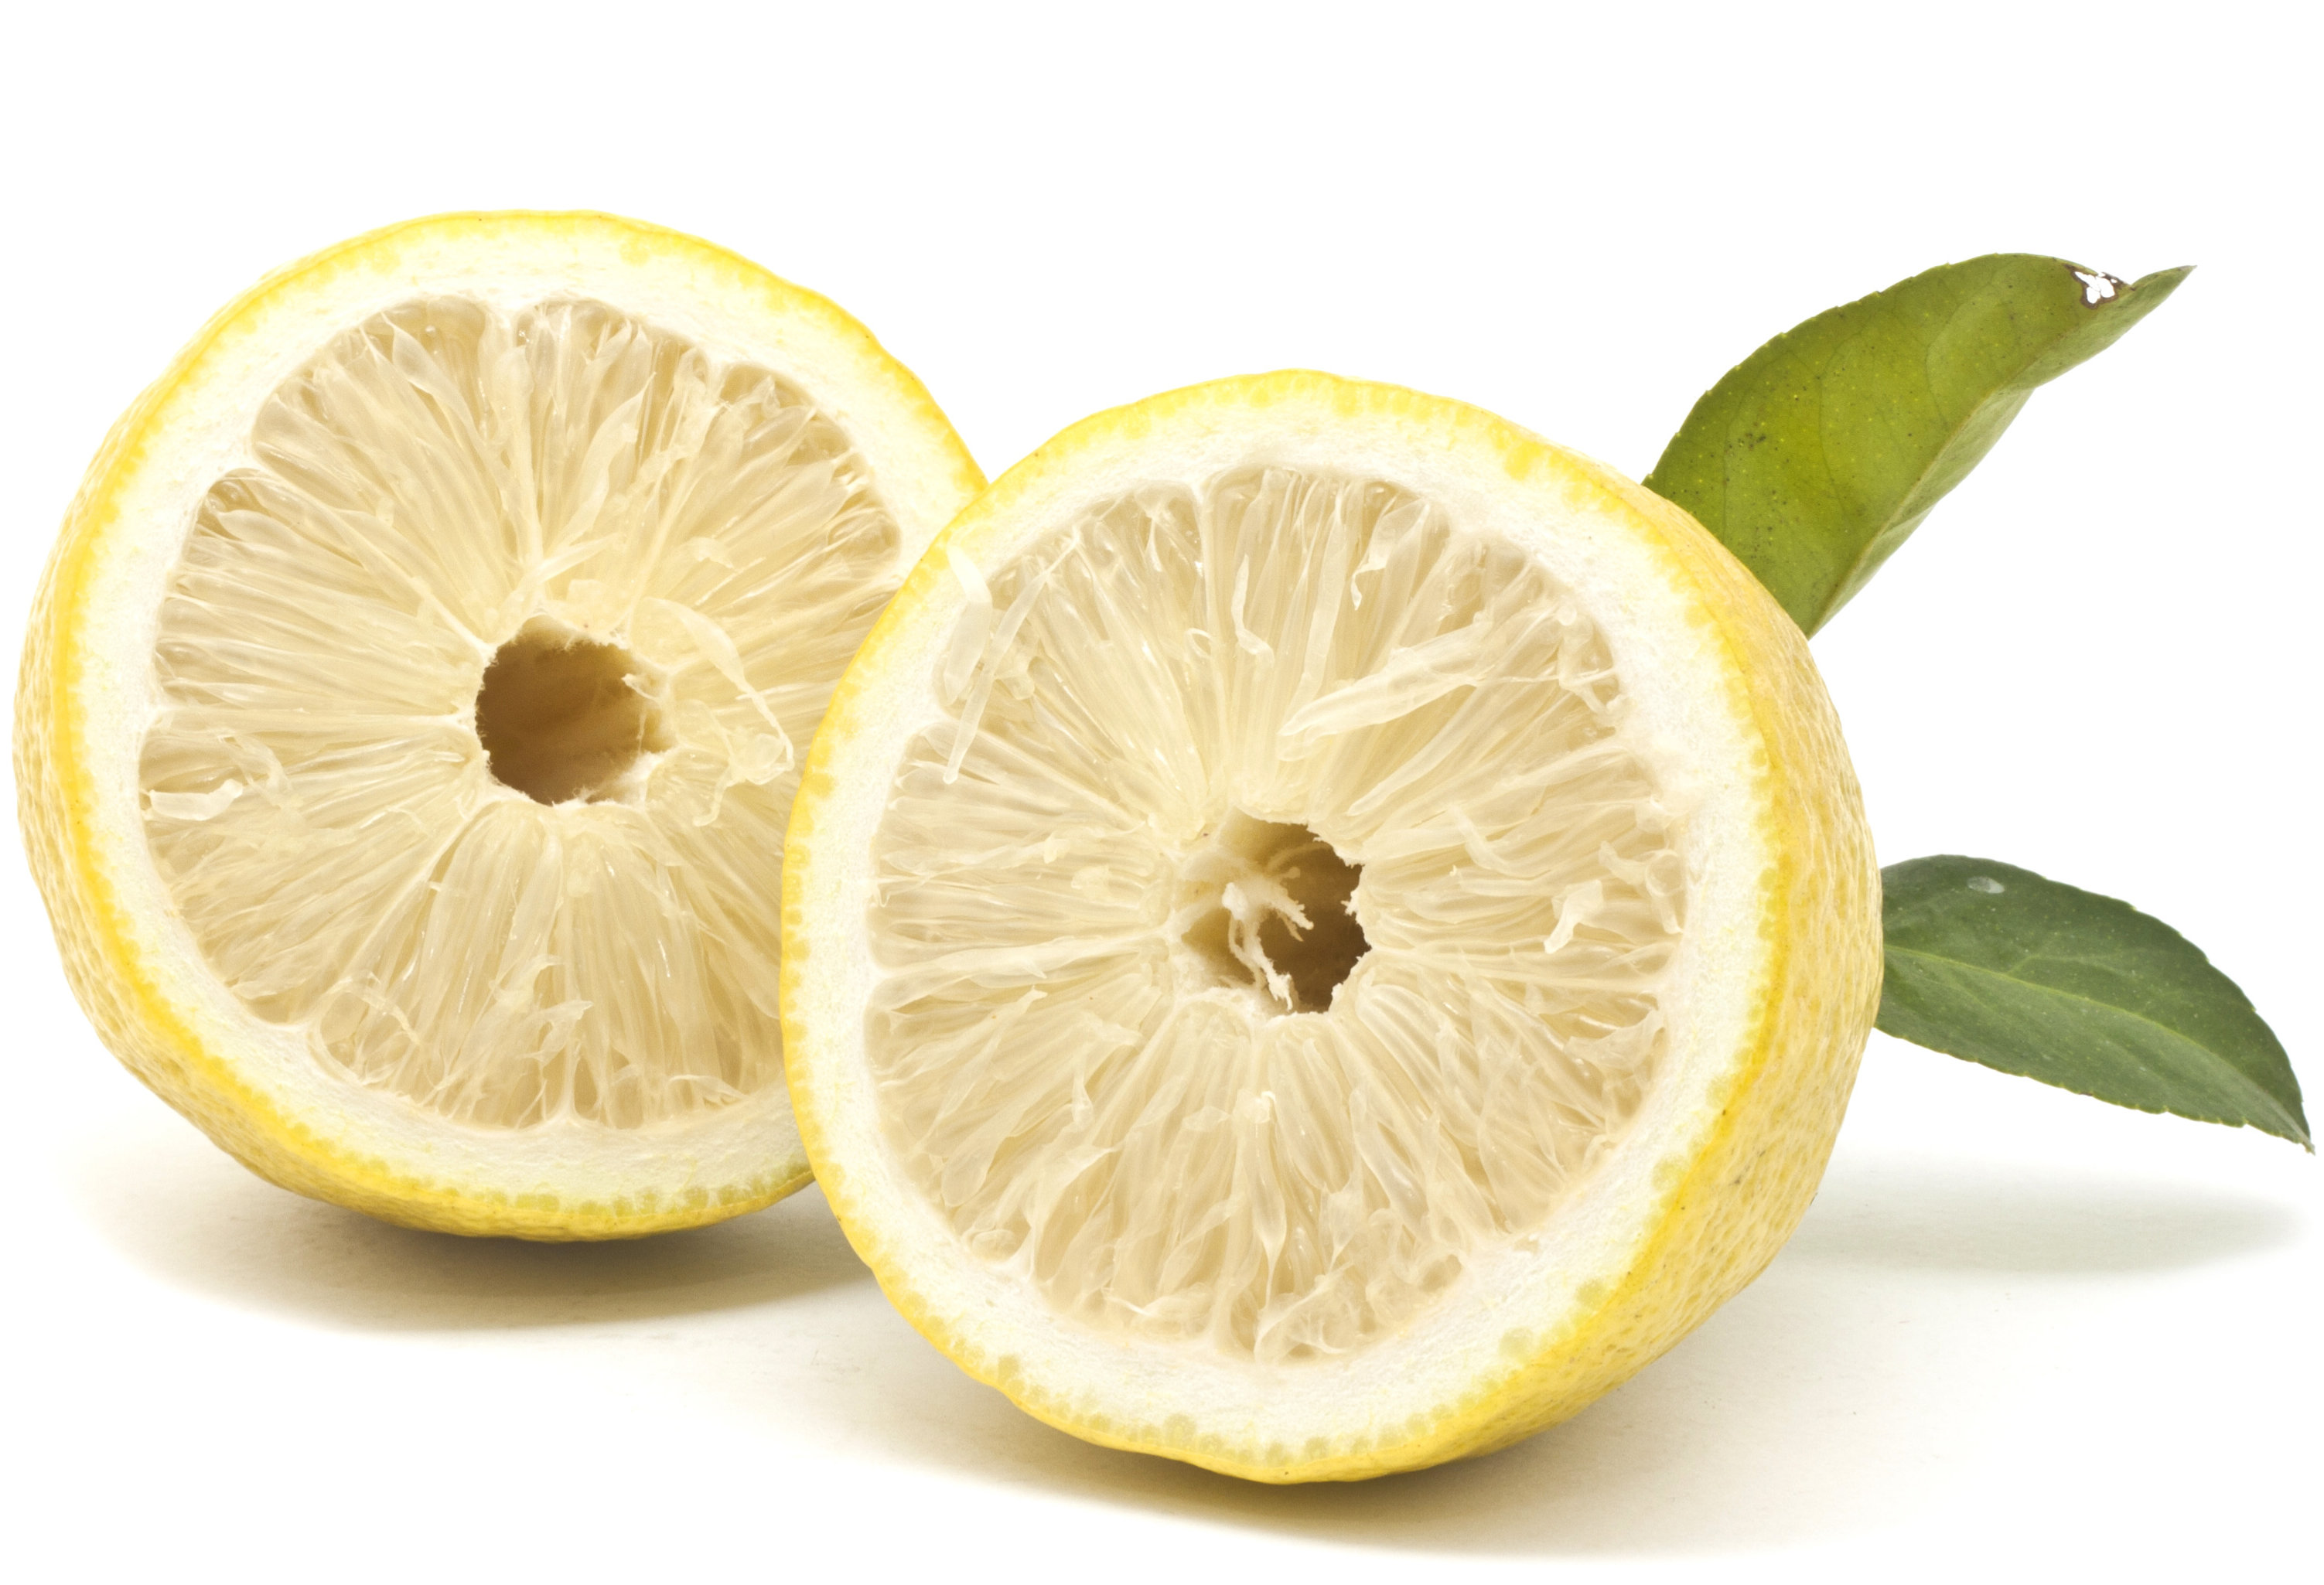 Yuzo, a Japanese citrus fruit